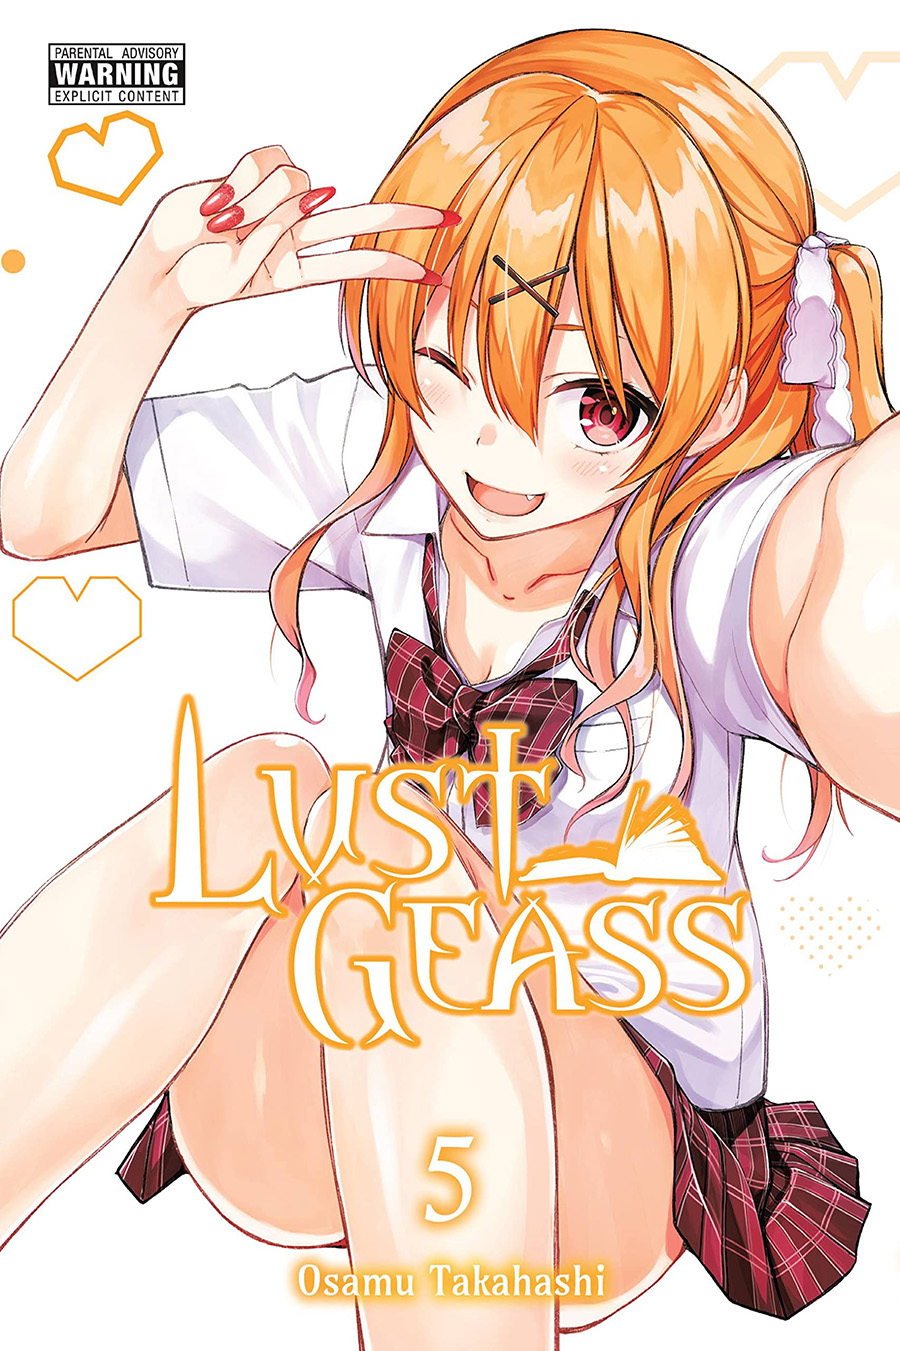 Lust Geass Vol 5 GN